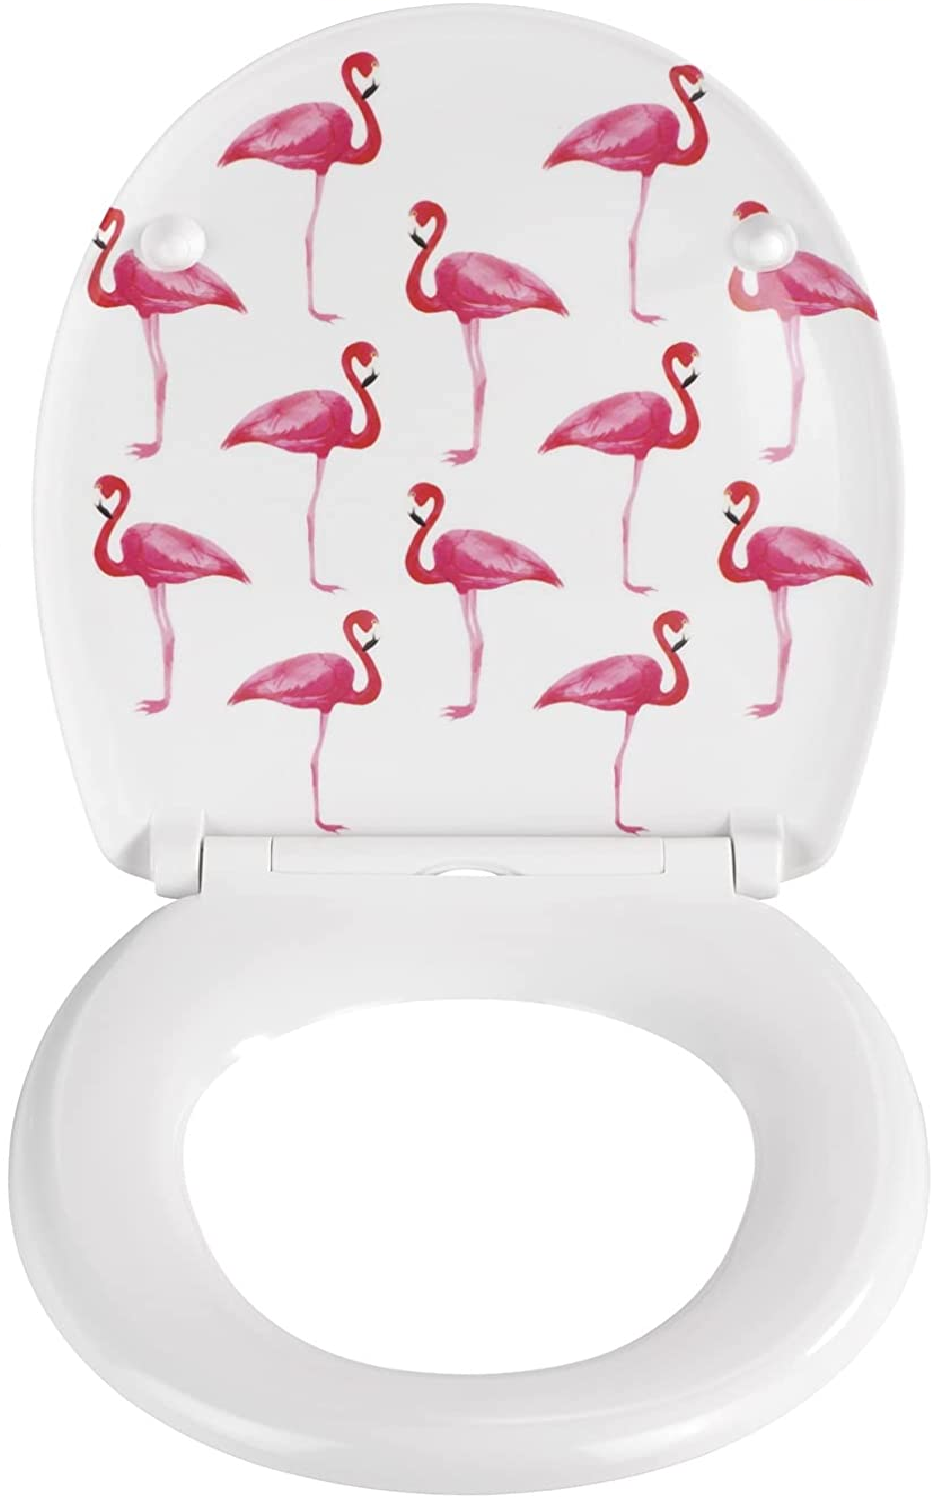 Premium WC-Sitz Flamingo - Antibakterieller Toiletten-Sitz mit Absenkautomatik, rostfreie Fix-Clip Hygiene Edelstahlbefestigung, Duroplast, 38 x 45 cm, Mehrfarbig